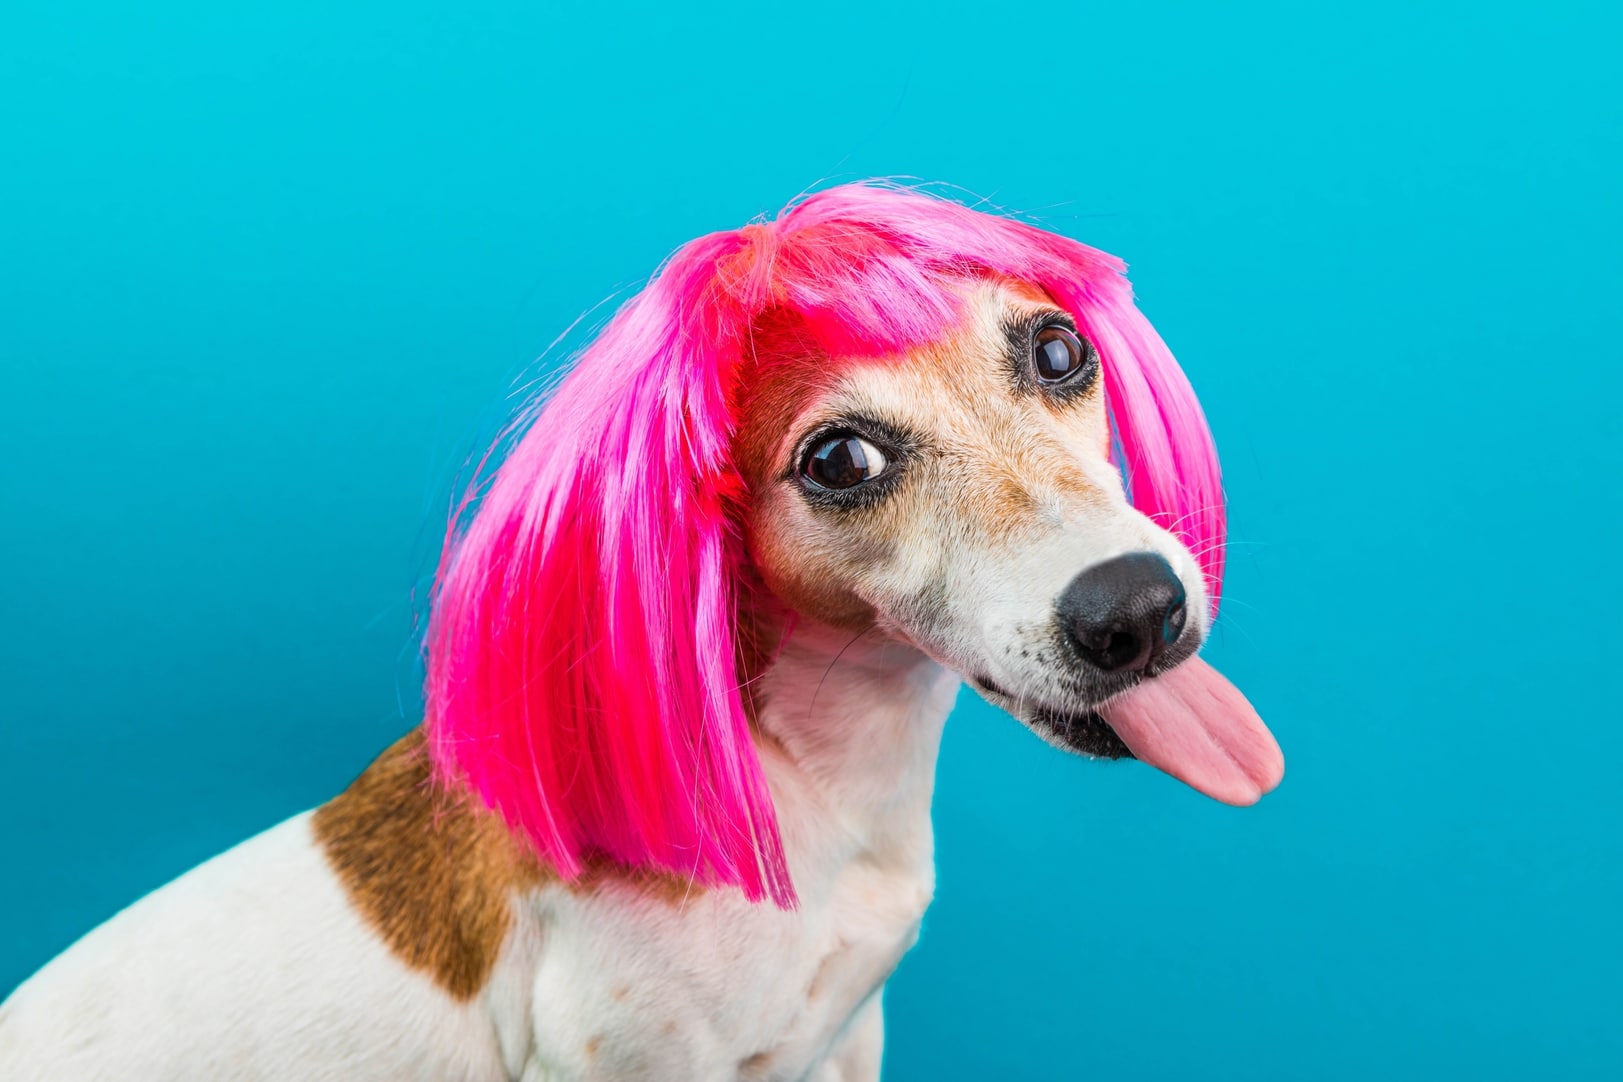 Dog wearing wig